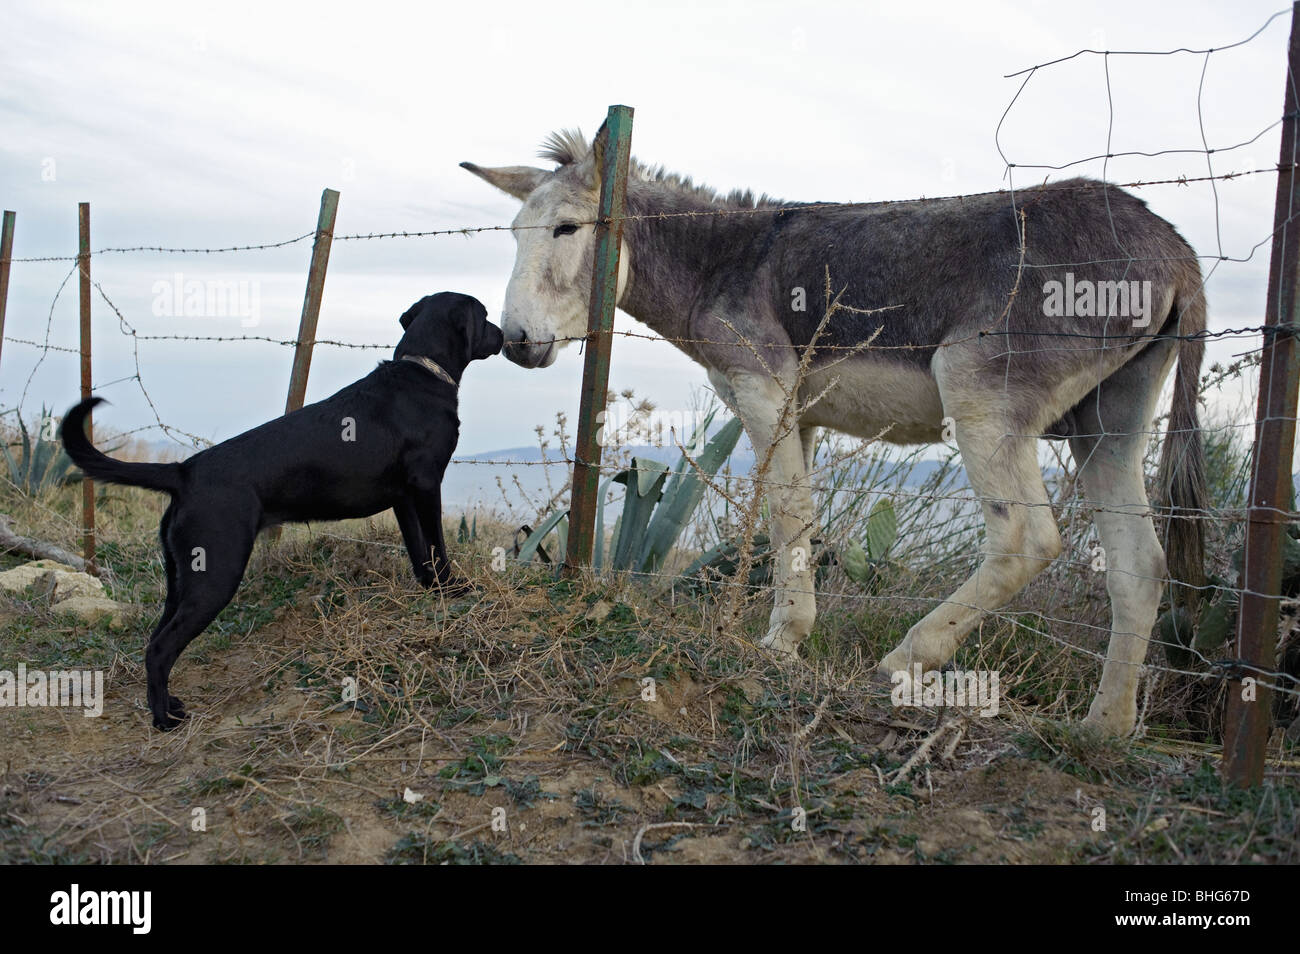 dog and donkey Stock Photo